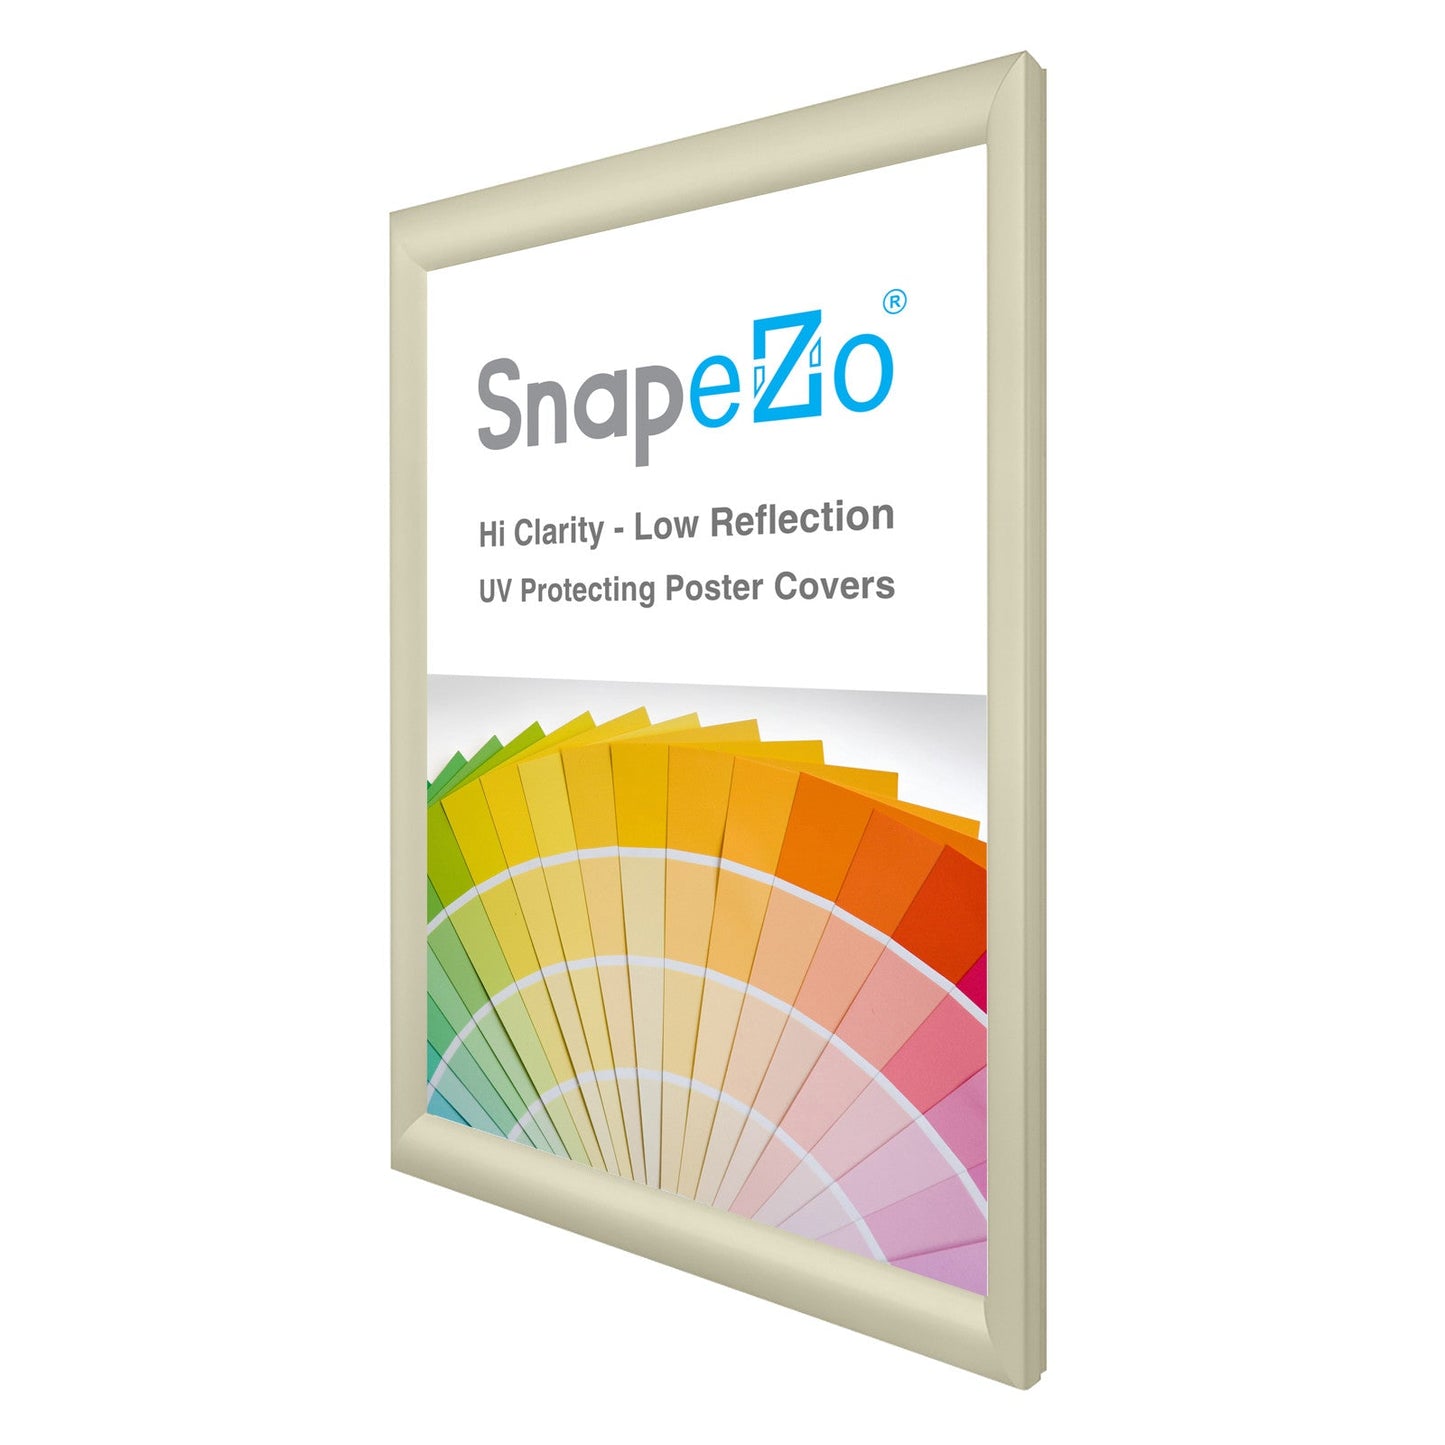 20x30 Cream SnapeZo® Snap Frame - 1.2" Profile